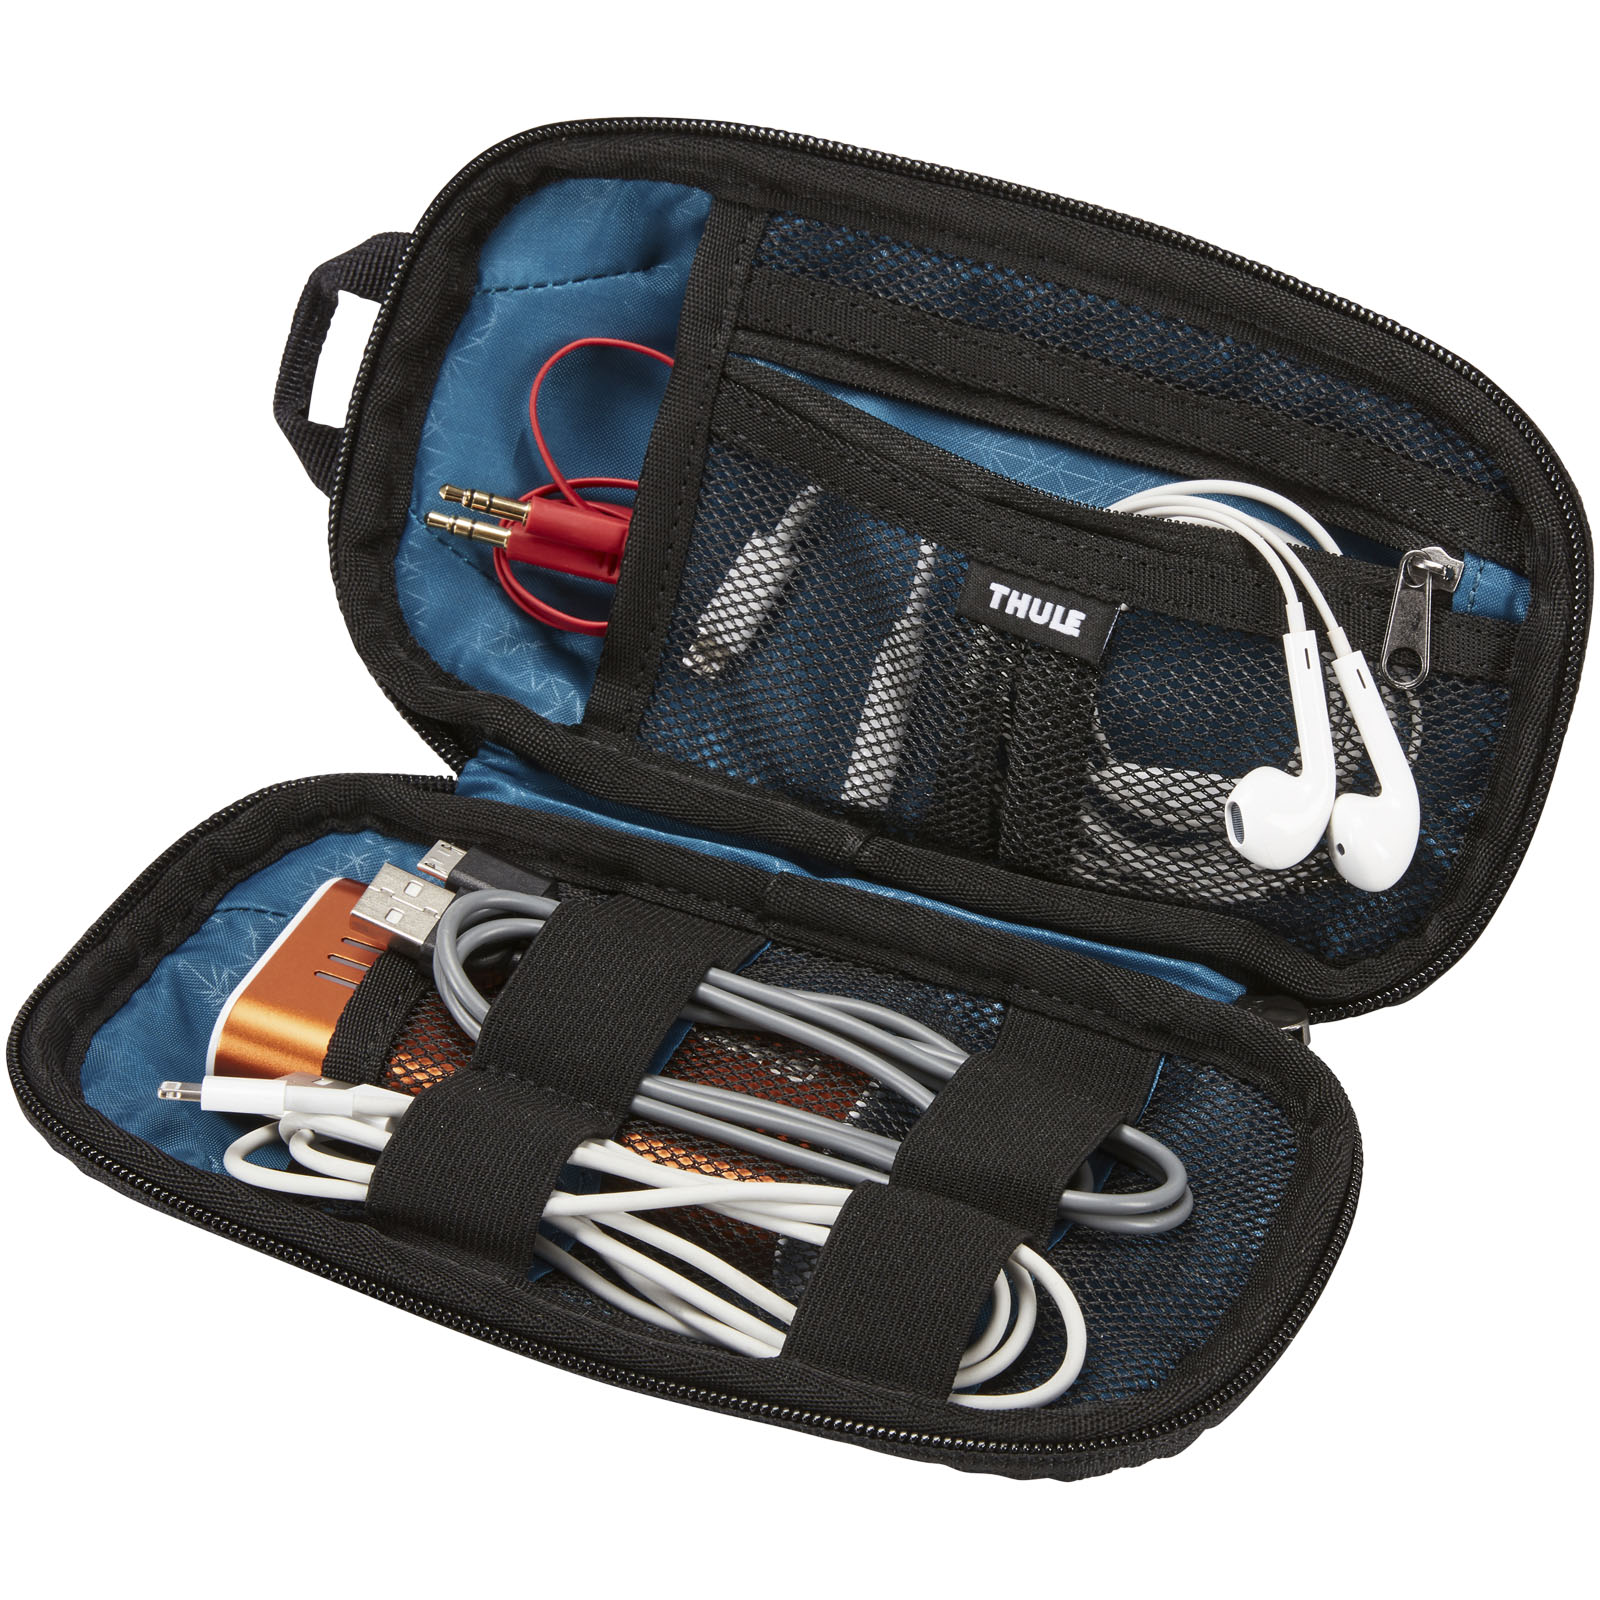 Accessoires de voyage publicitaires - Mini sac Thule Subterra PowerShuttle pour accessoires - 3